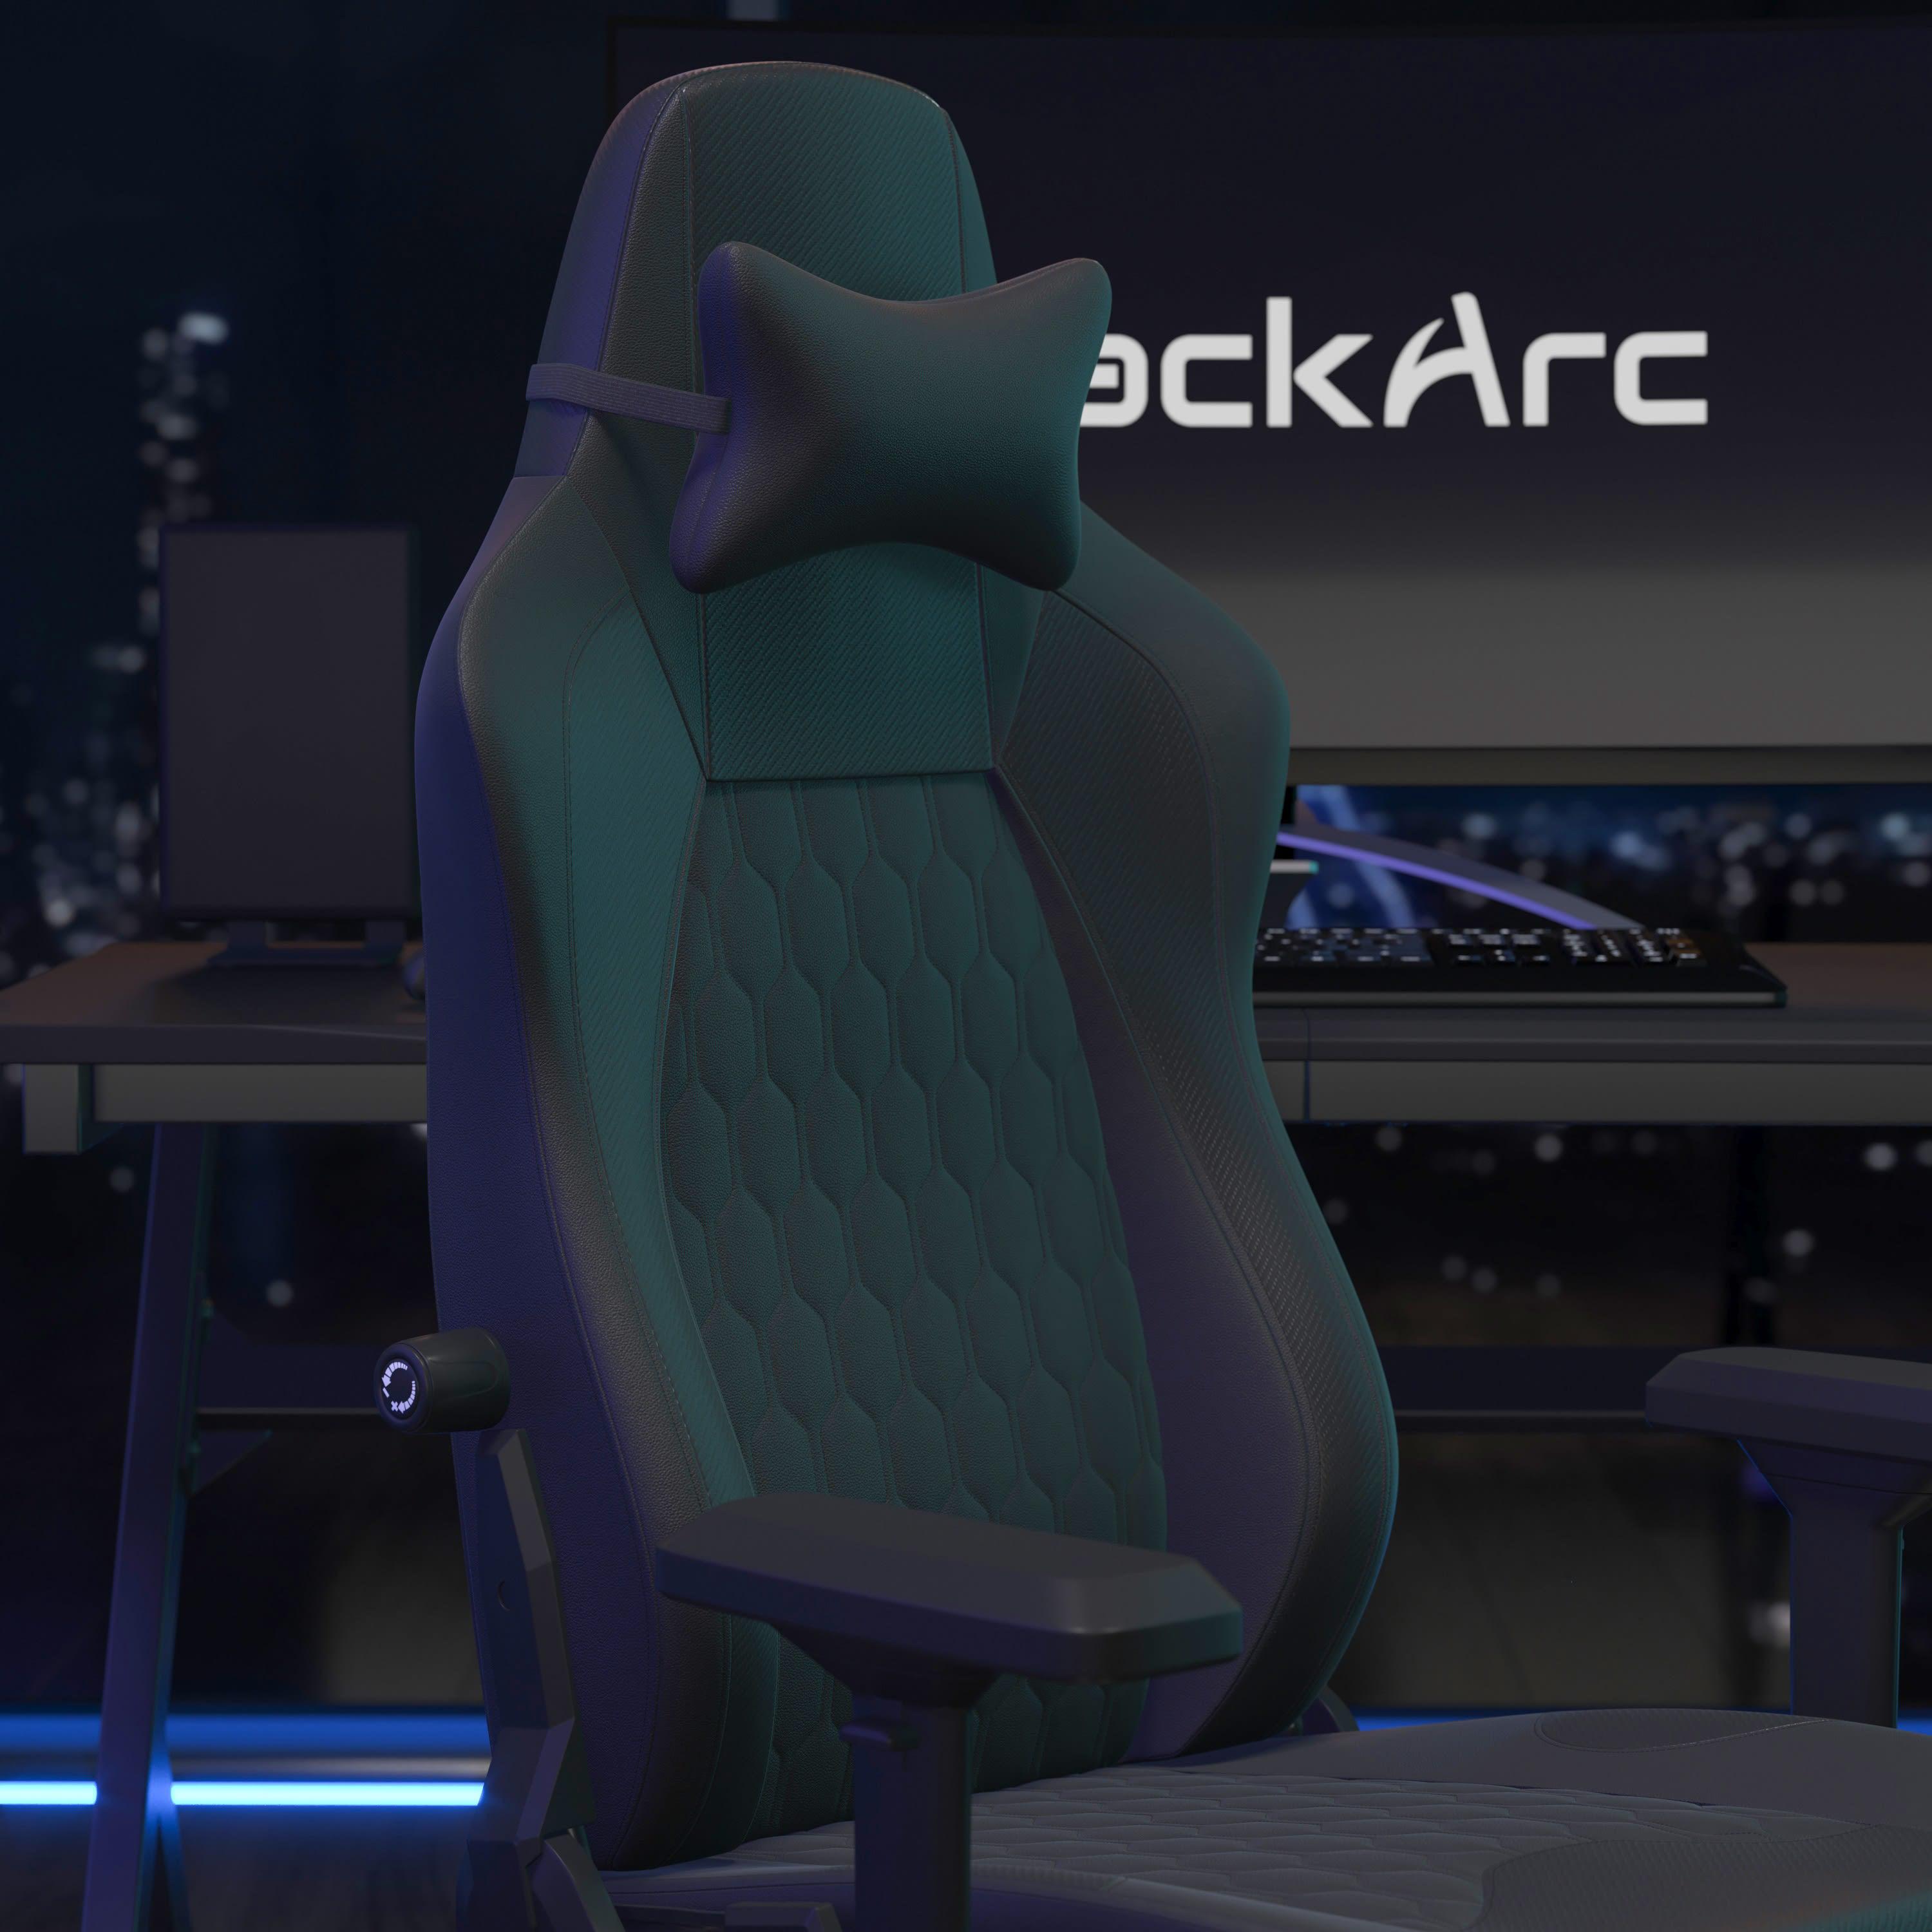 4D Gaming Chair B-ARC-PAR-OFCEX-4425- – BizChair